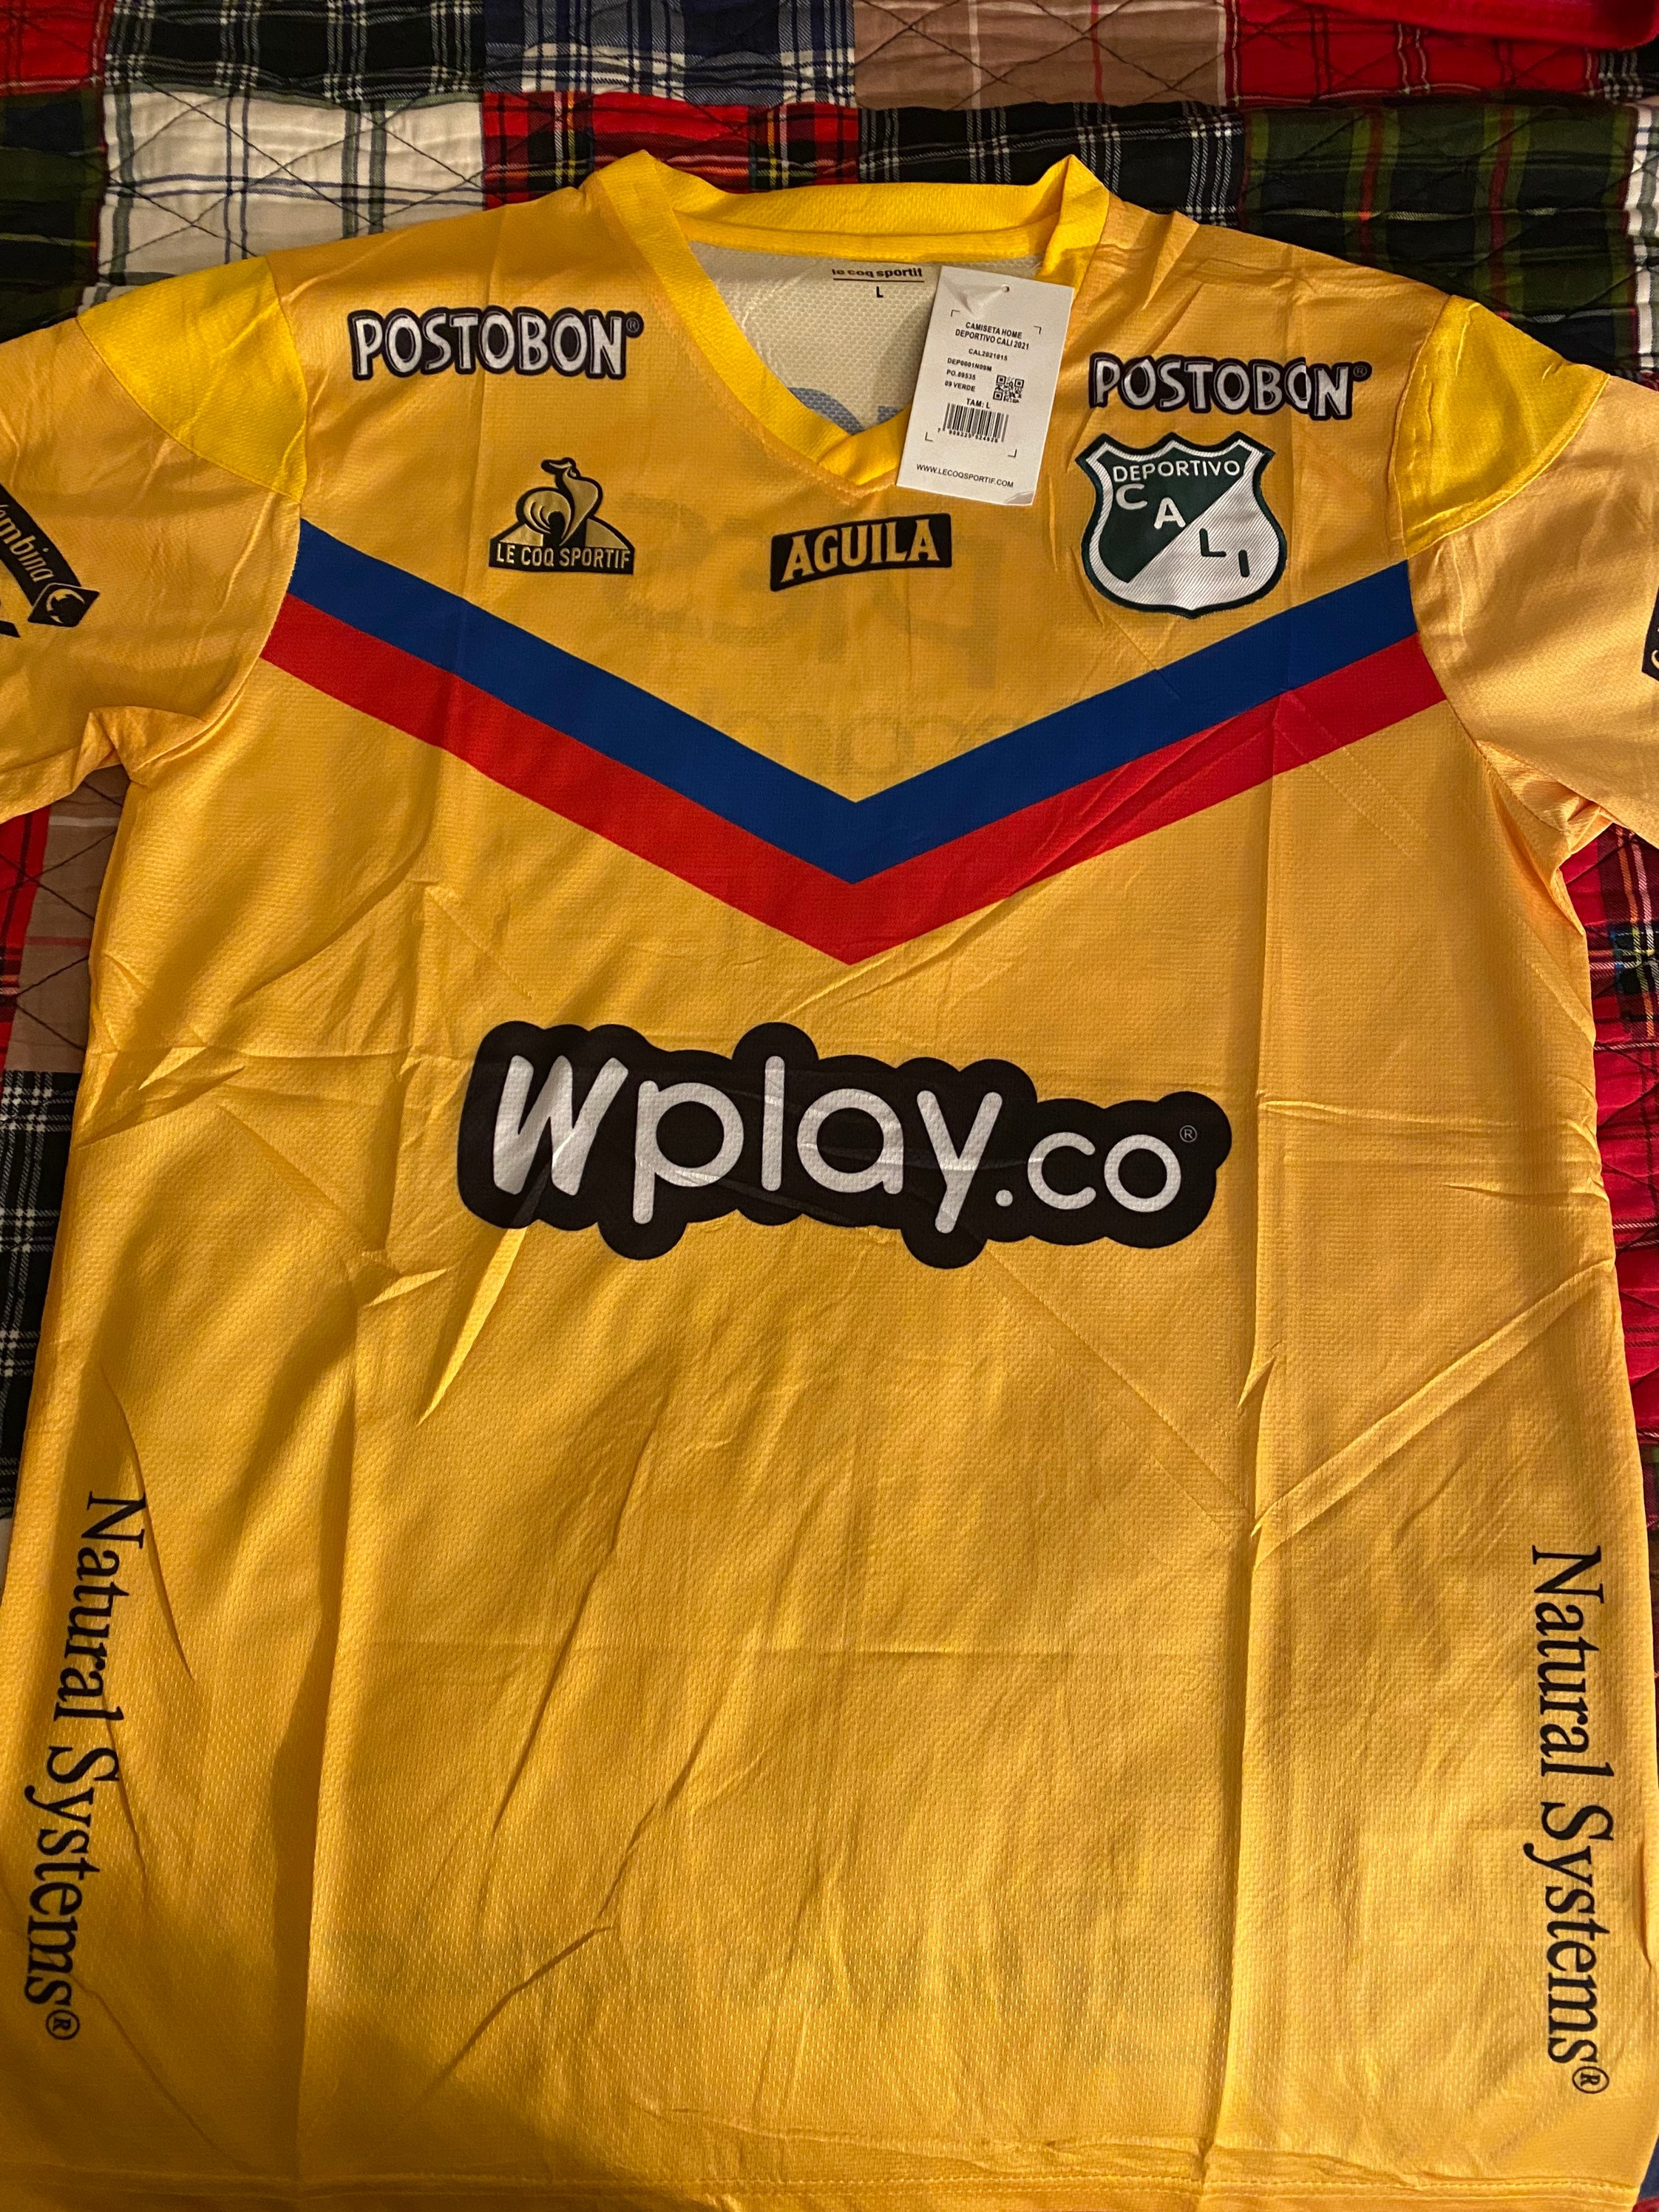 Colombia 1990 Valderrama World Cup Retro Soccer Jersey Classic 